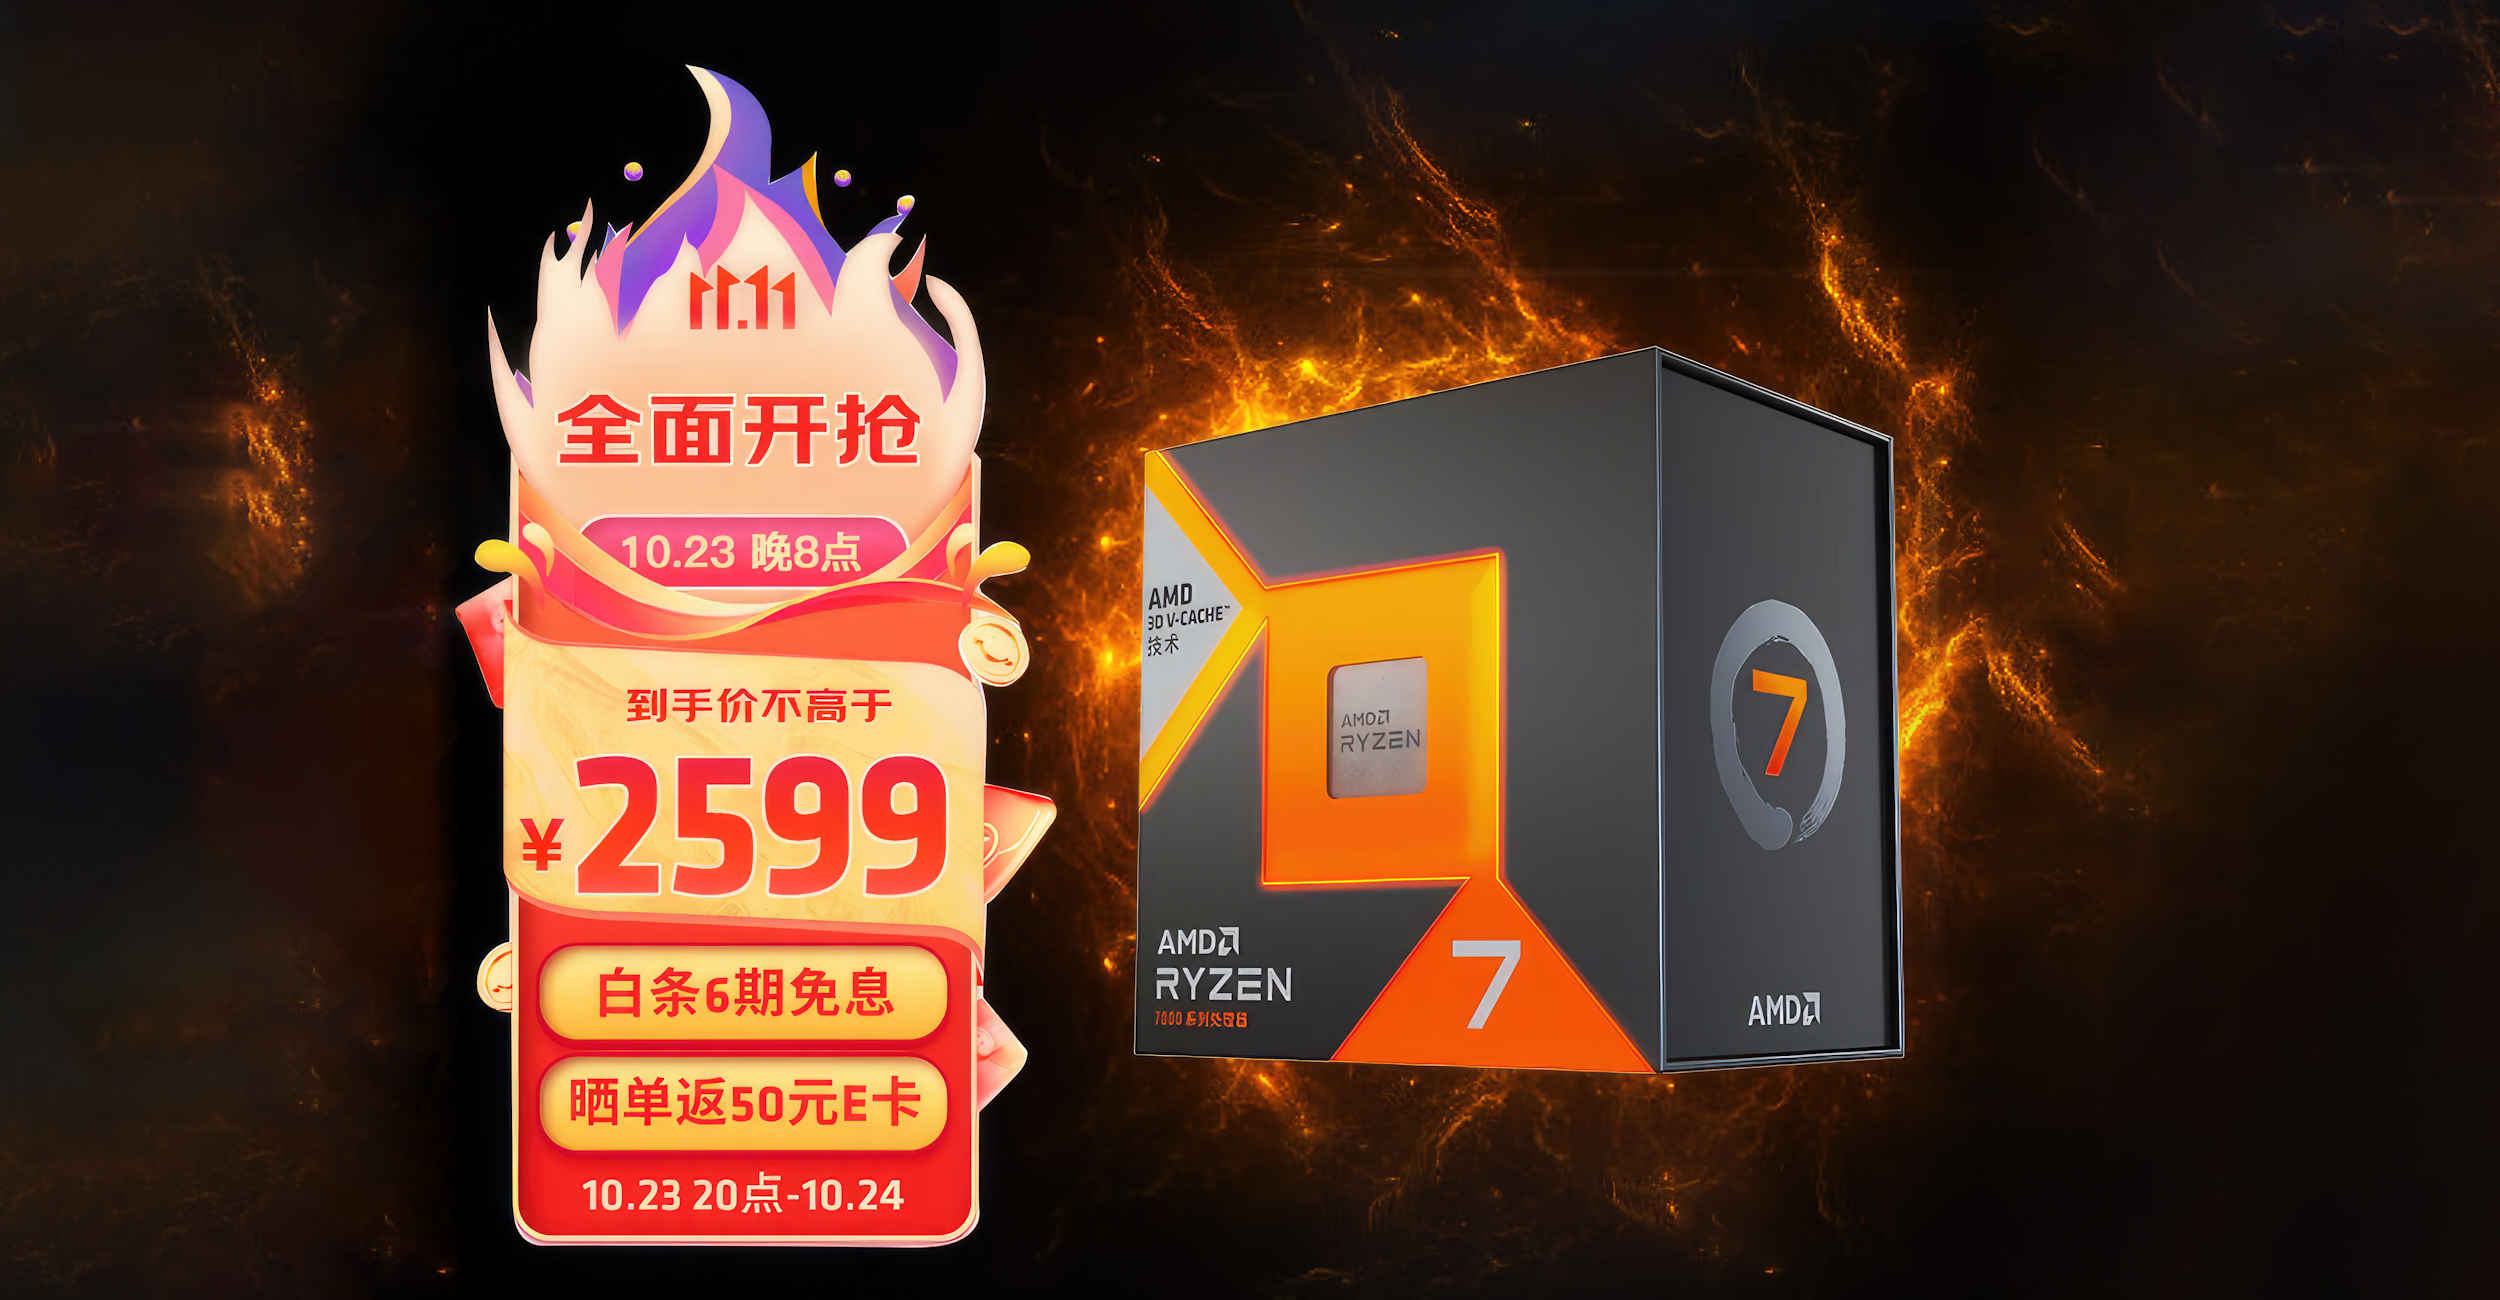 AMD Ryzen 7 7800X3D: as good as we hoped! 